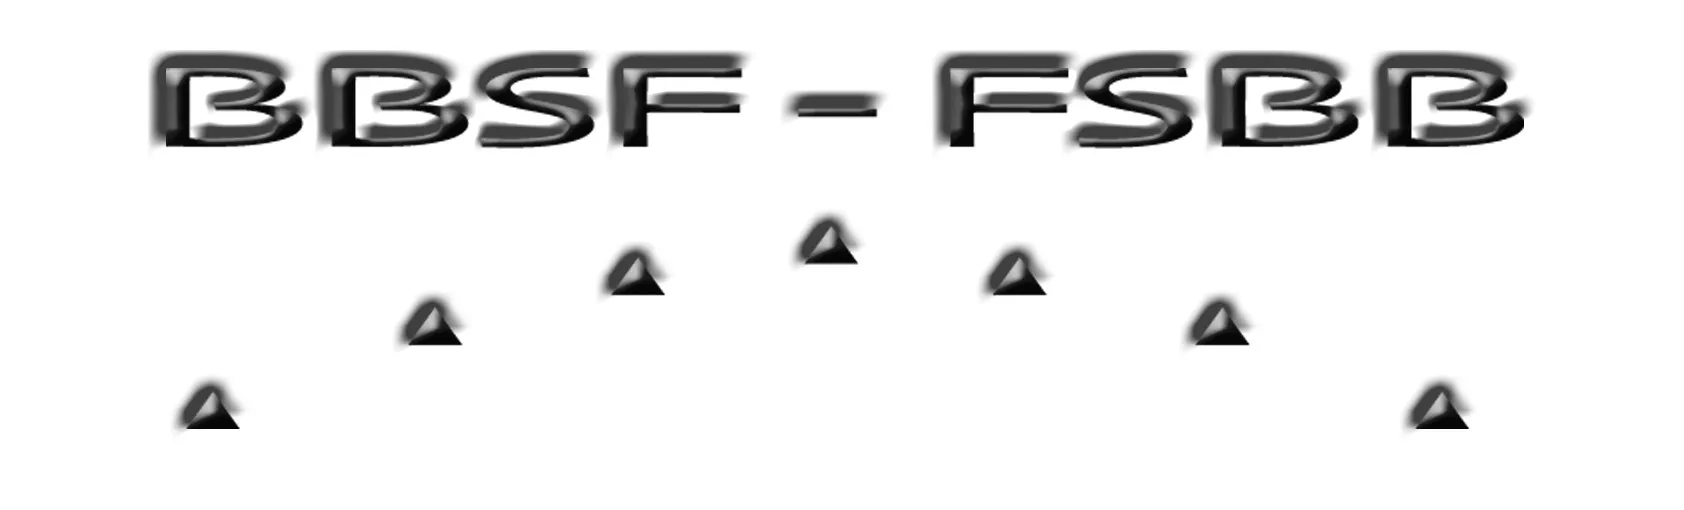 BBSF logo